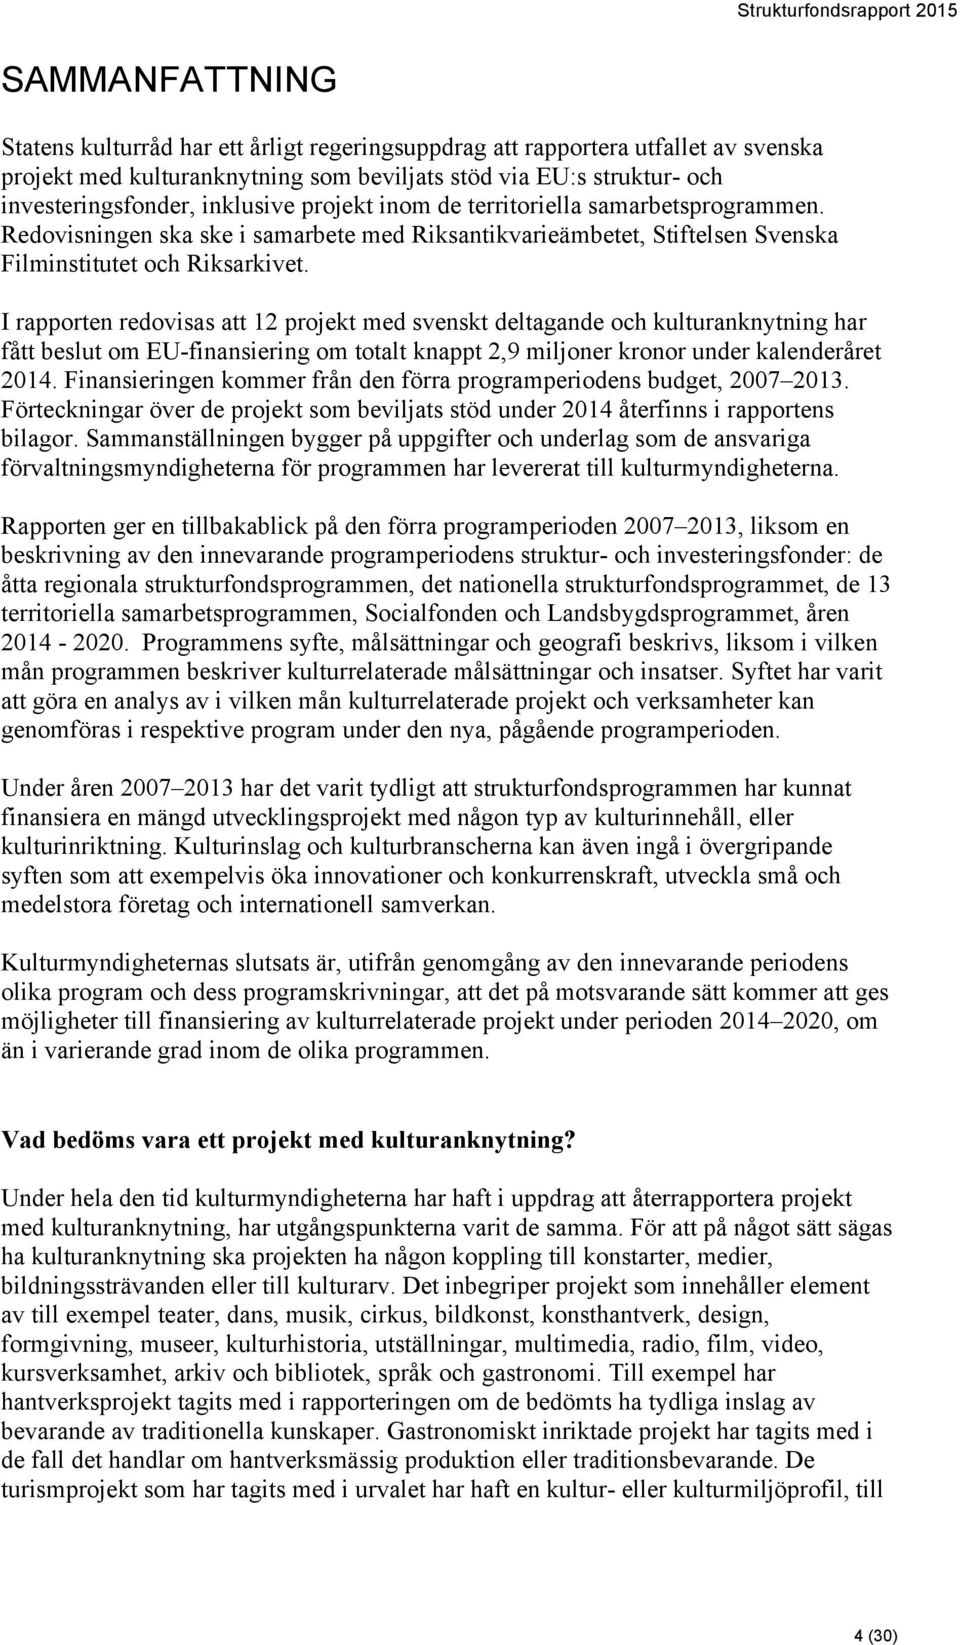 I rapporten redovisas att 12 projekt med svenskt deltagande och kulturanknytning har fått beslut om EU-finansiering om totalt knappt 2,9 miljoner kronor under kalenderåret 2014.